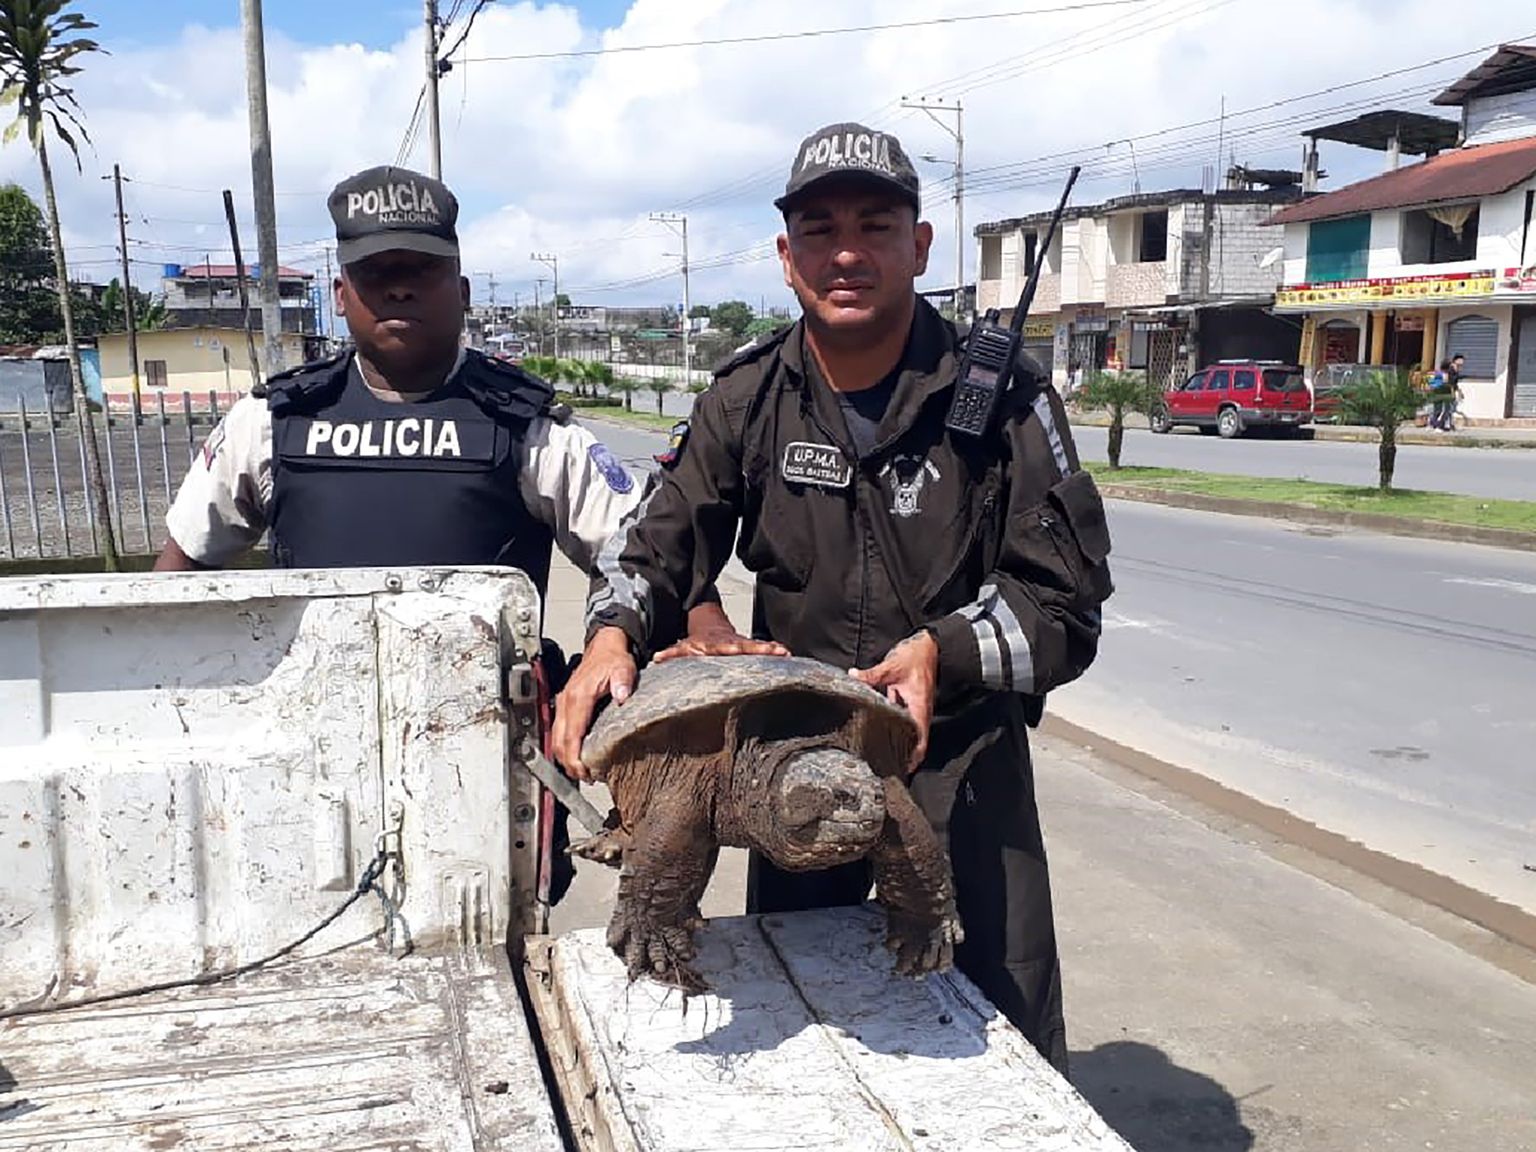 Ecuadori keskkonnapolitsei konfiskeeris eluslooduse kaubitsejatelt kilpkonna.